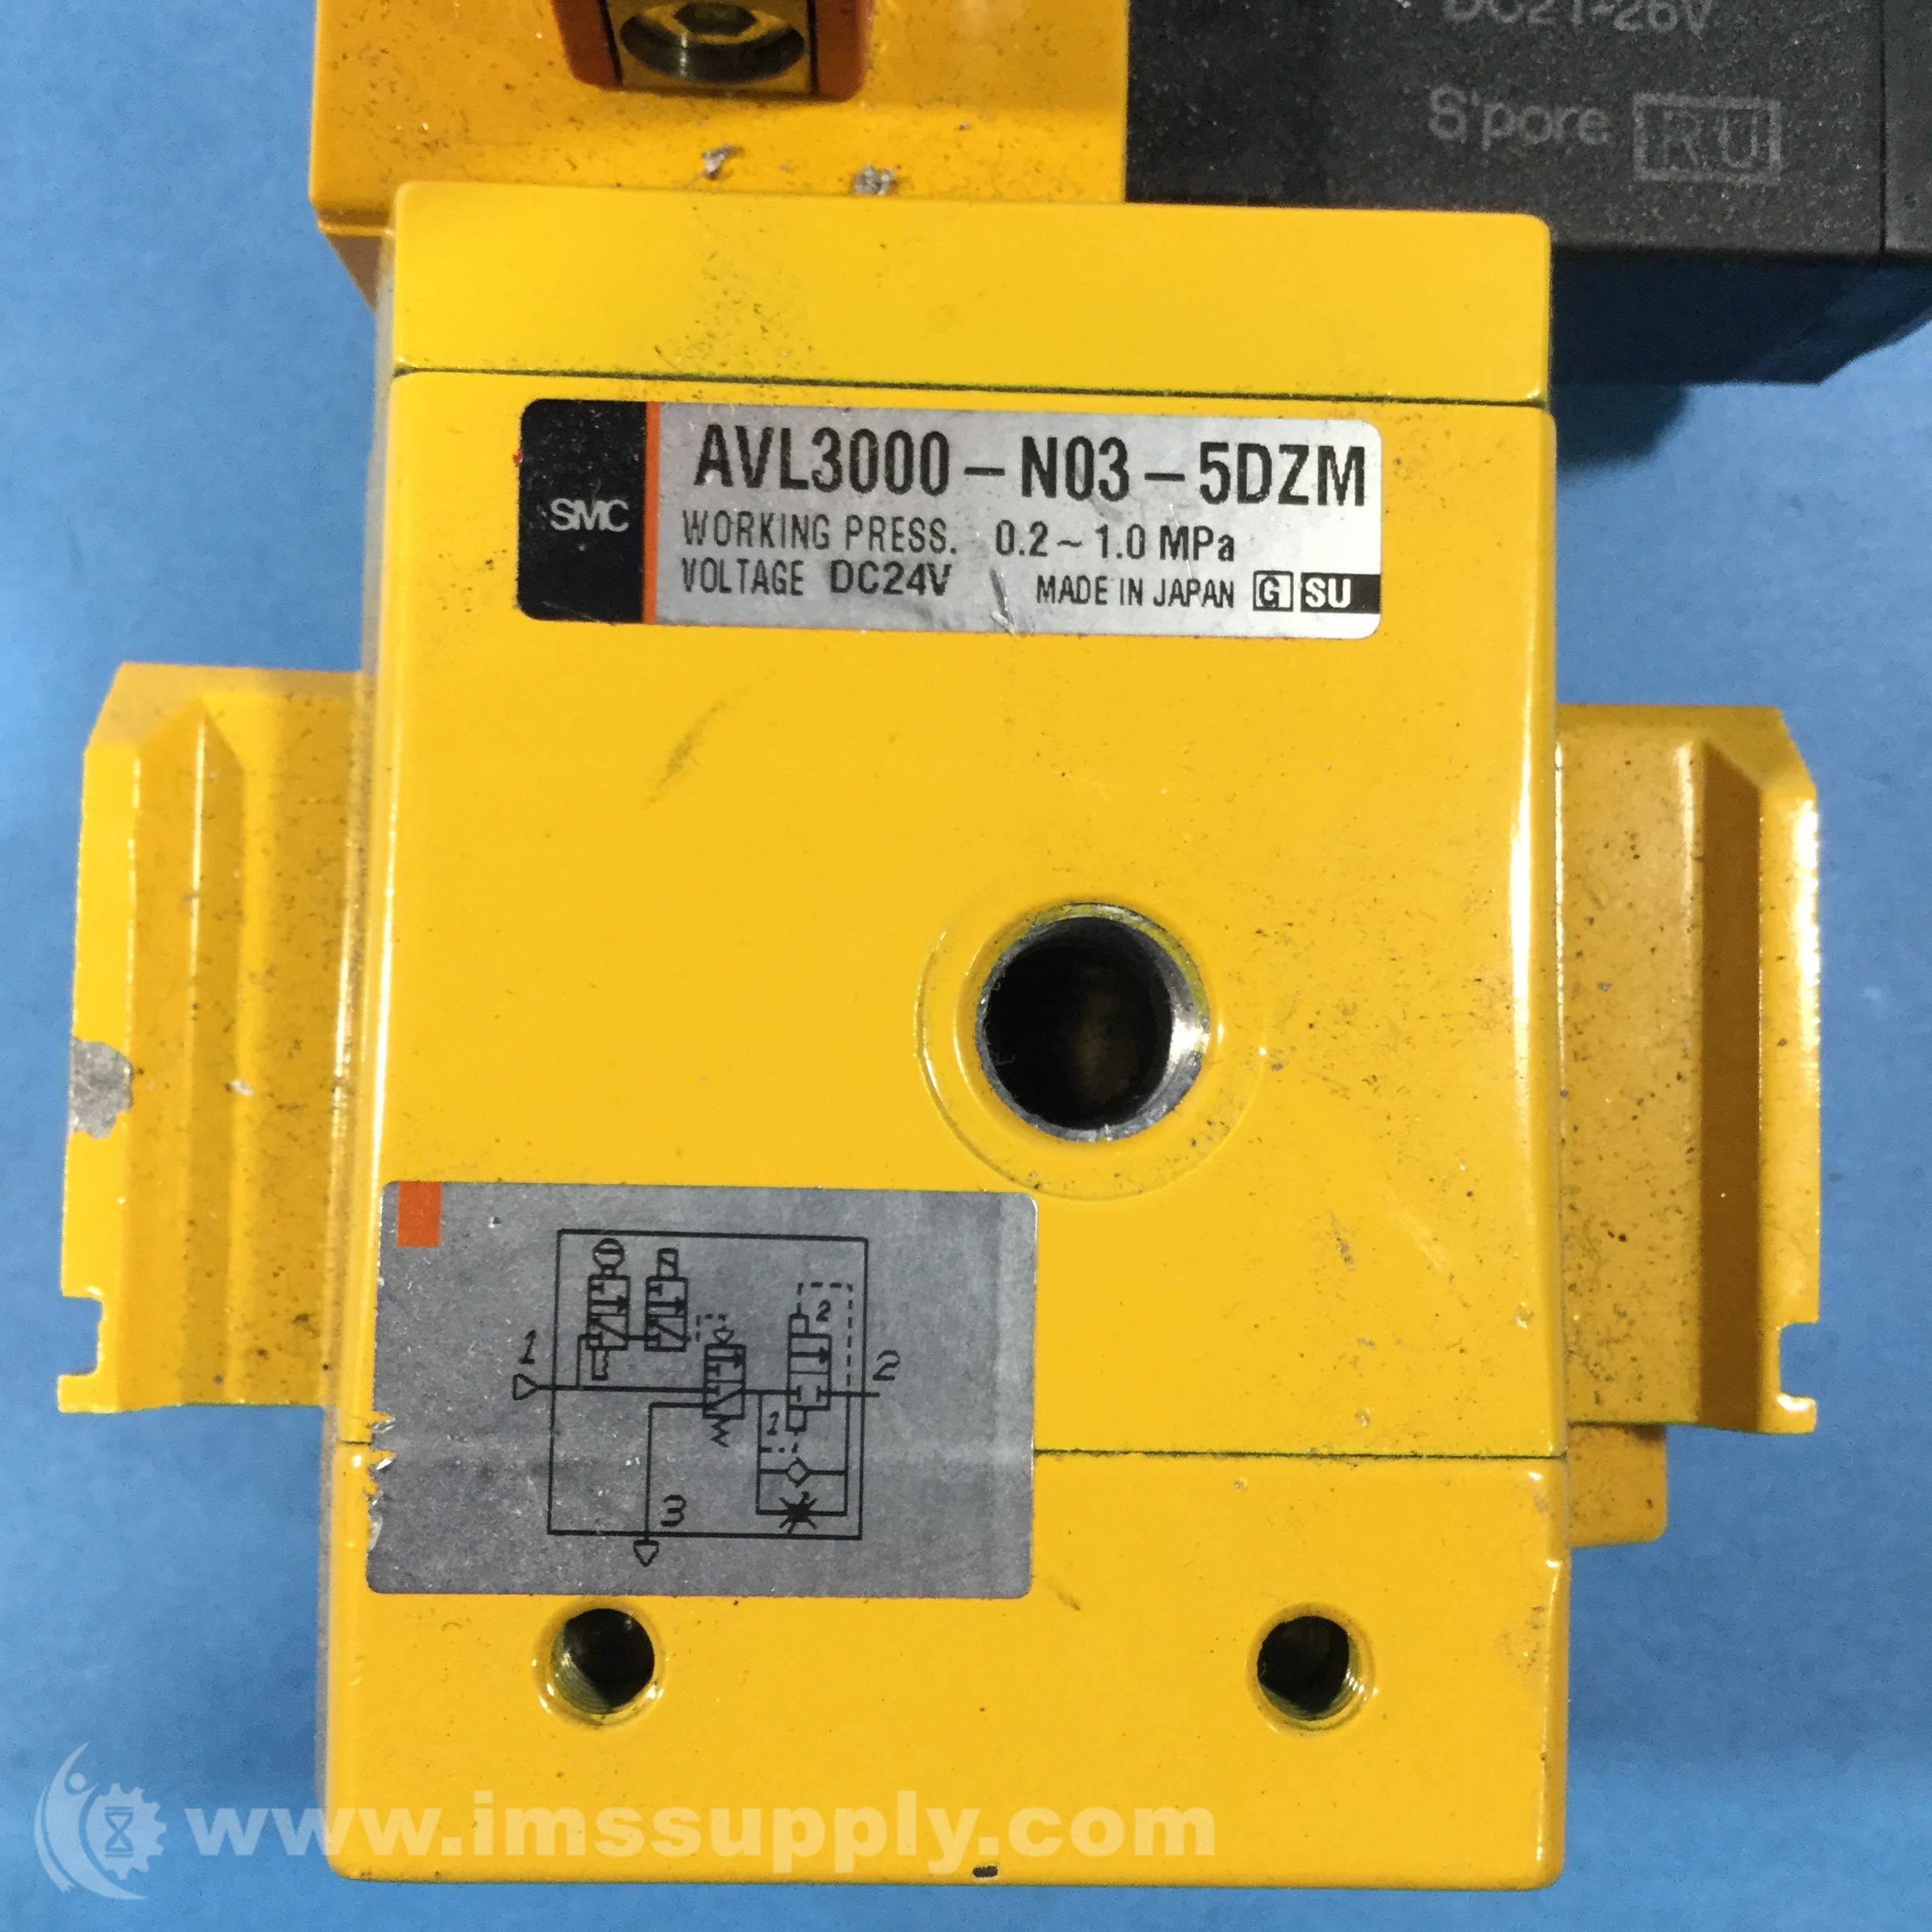 SMC AF30-N03-Z PRESSURE REGULATOR FILTER WITH AVL3000-N03-5DZM LOCK OUT 